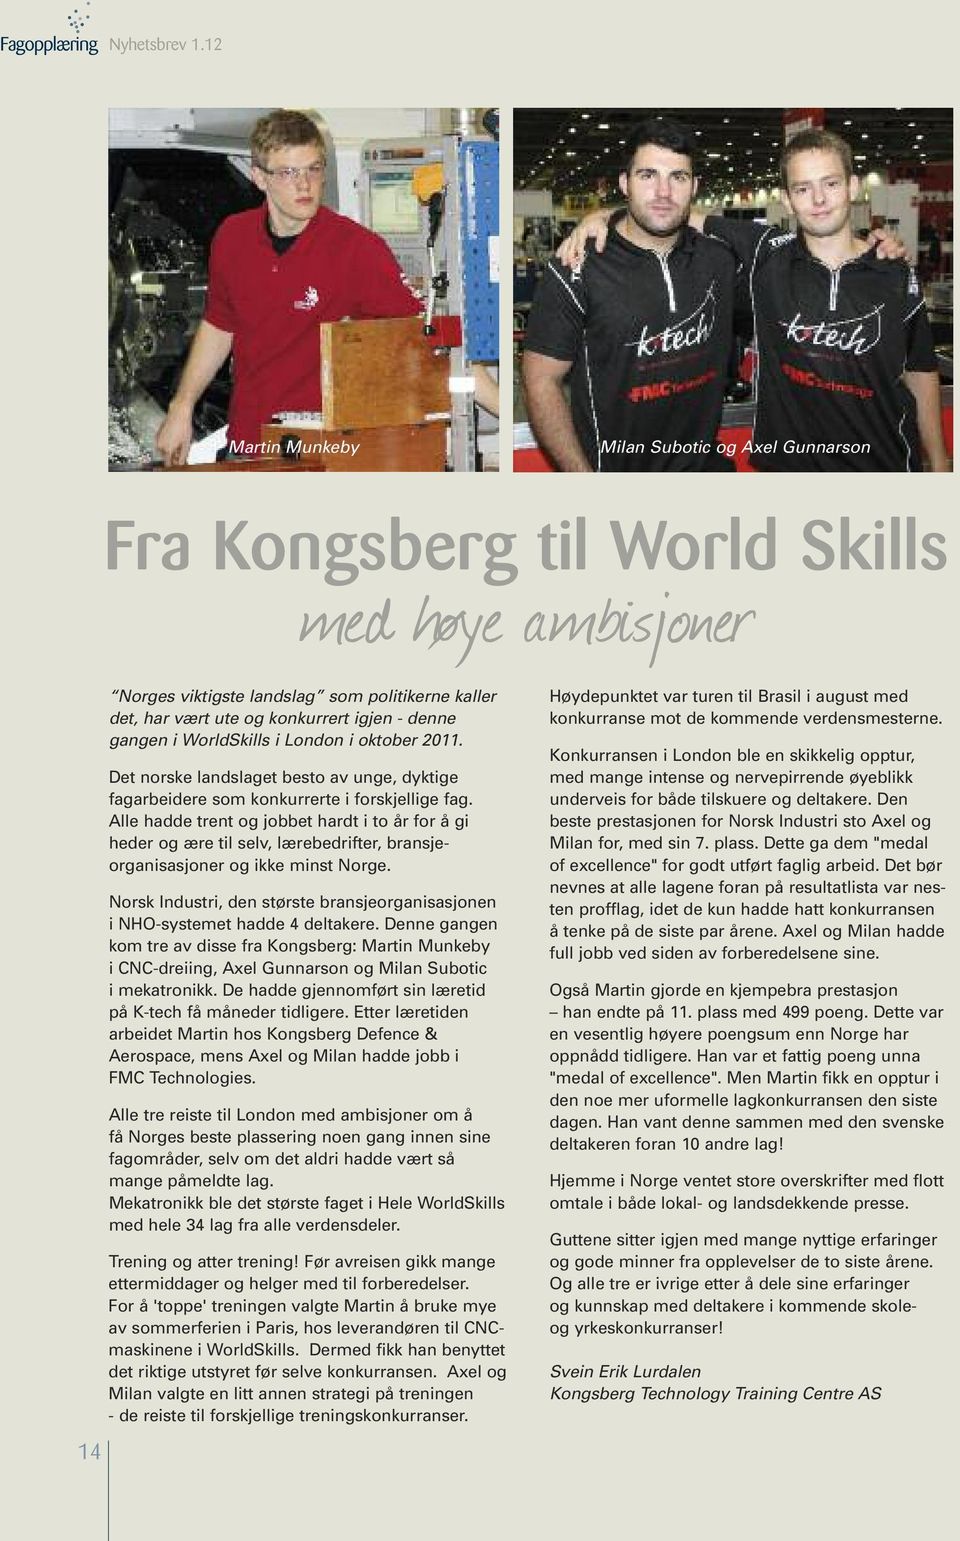 gangen i WorldSkills i London i oktober 2011. Det norske landslaget besto av unge, dyktige fagarbeidere som konkurrerte i forskjellige fag.